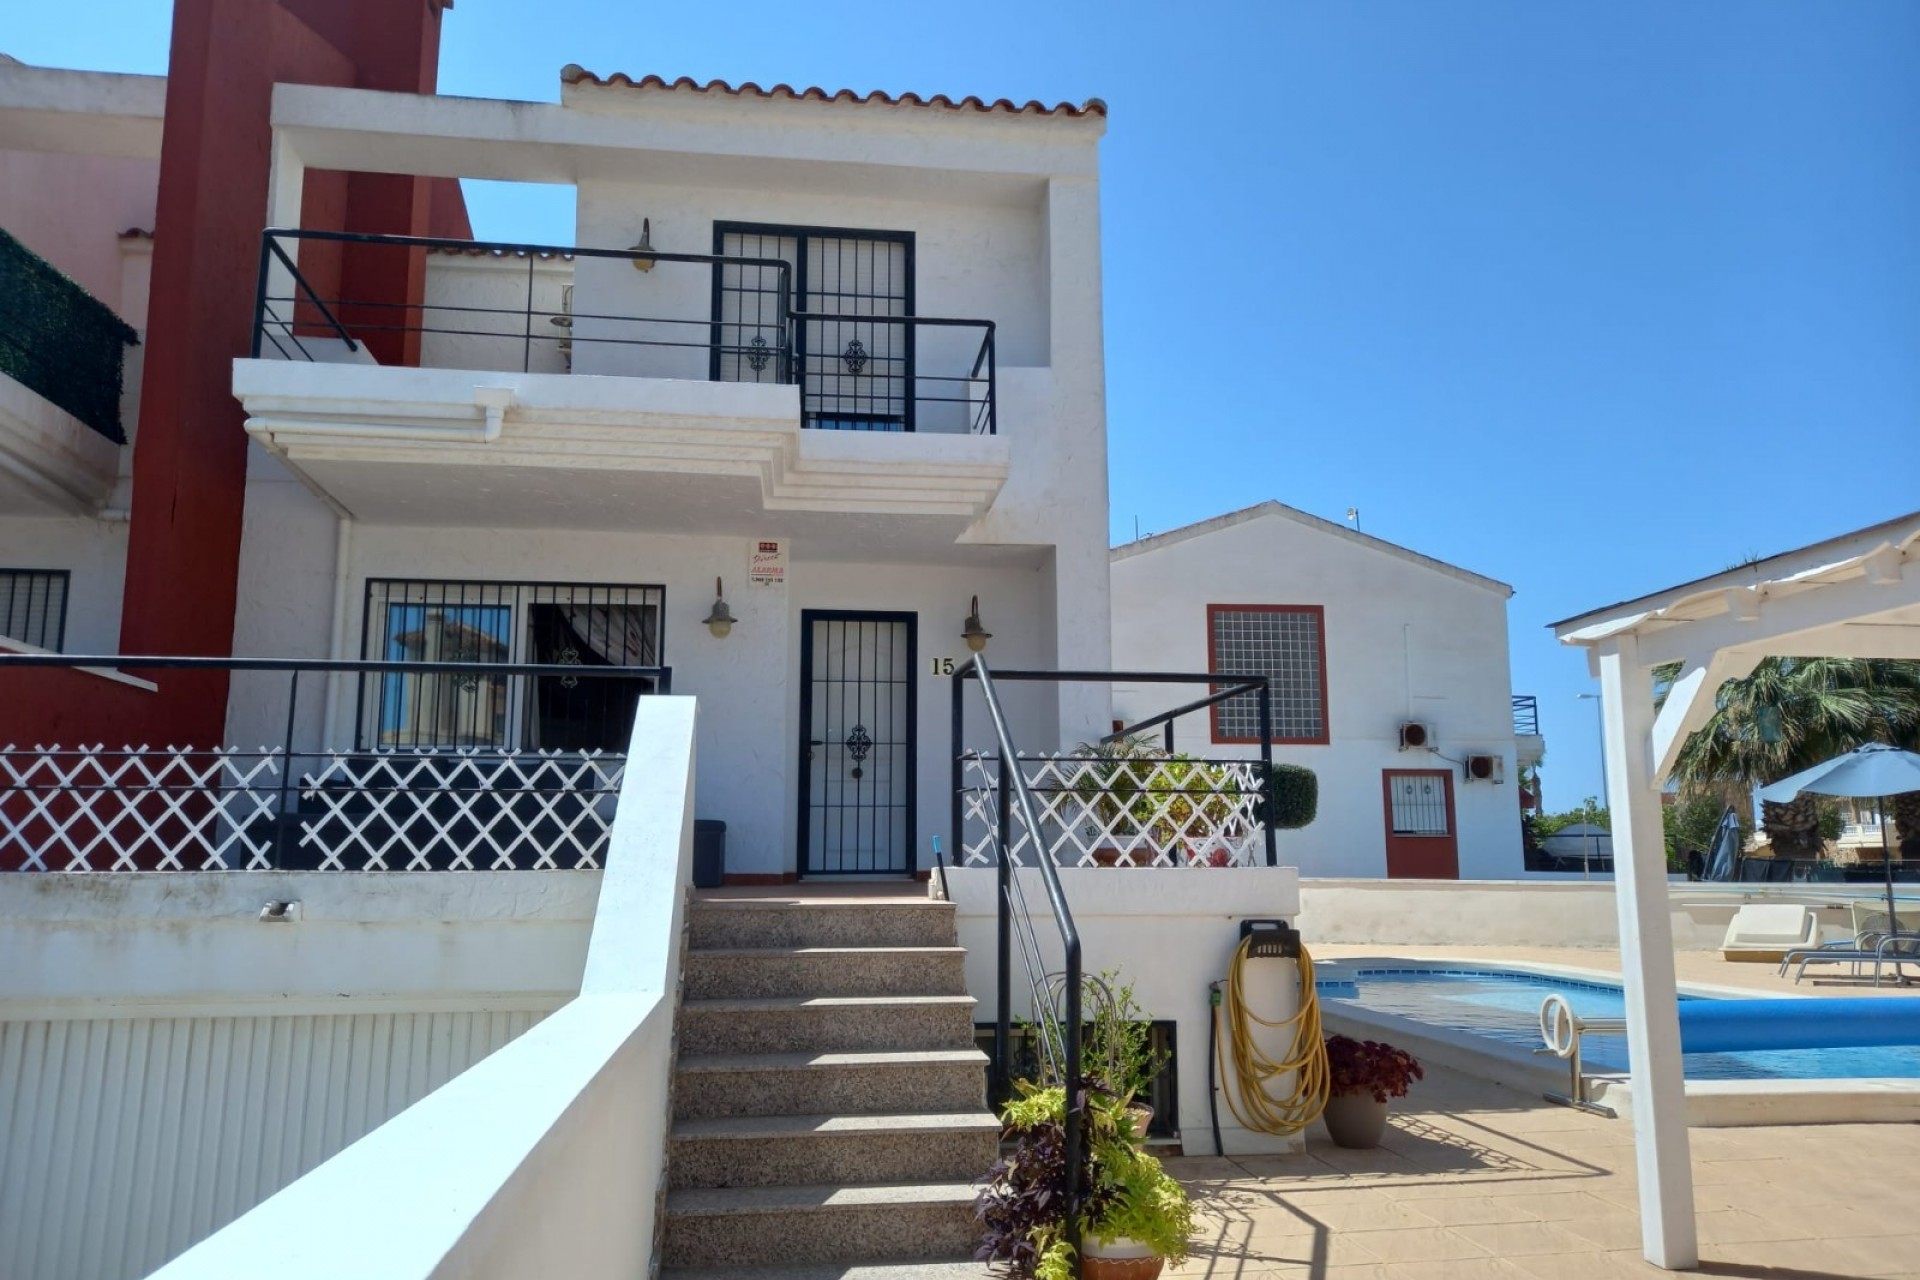 4 bedroom house / villa for sale in El Raso, Costa Blanca